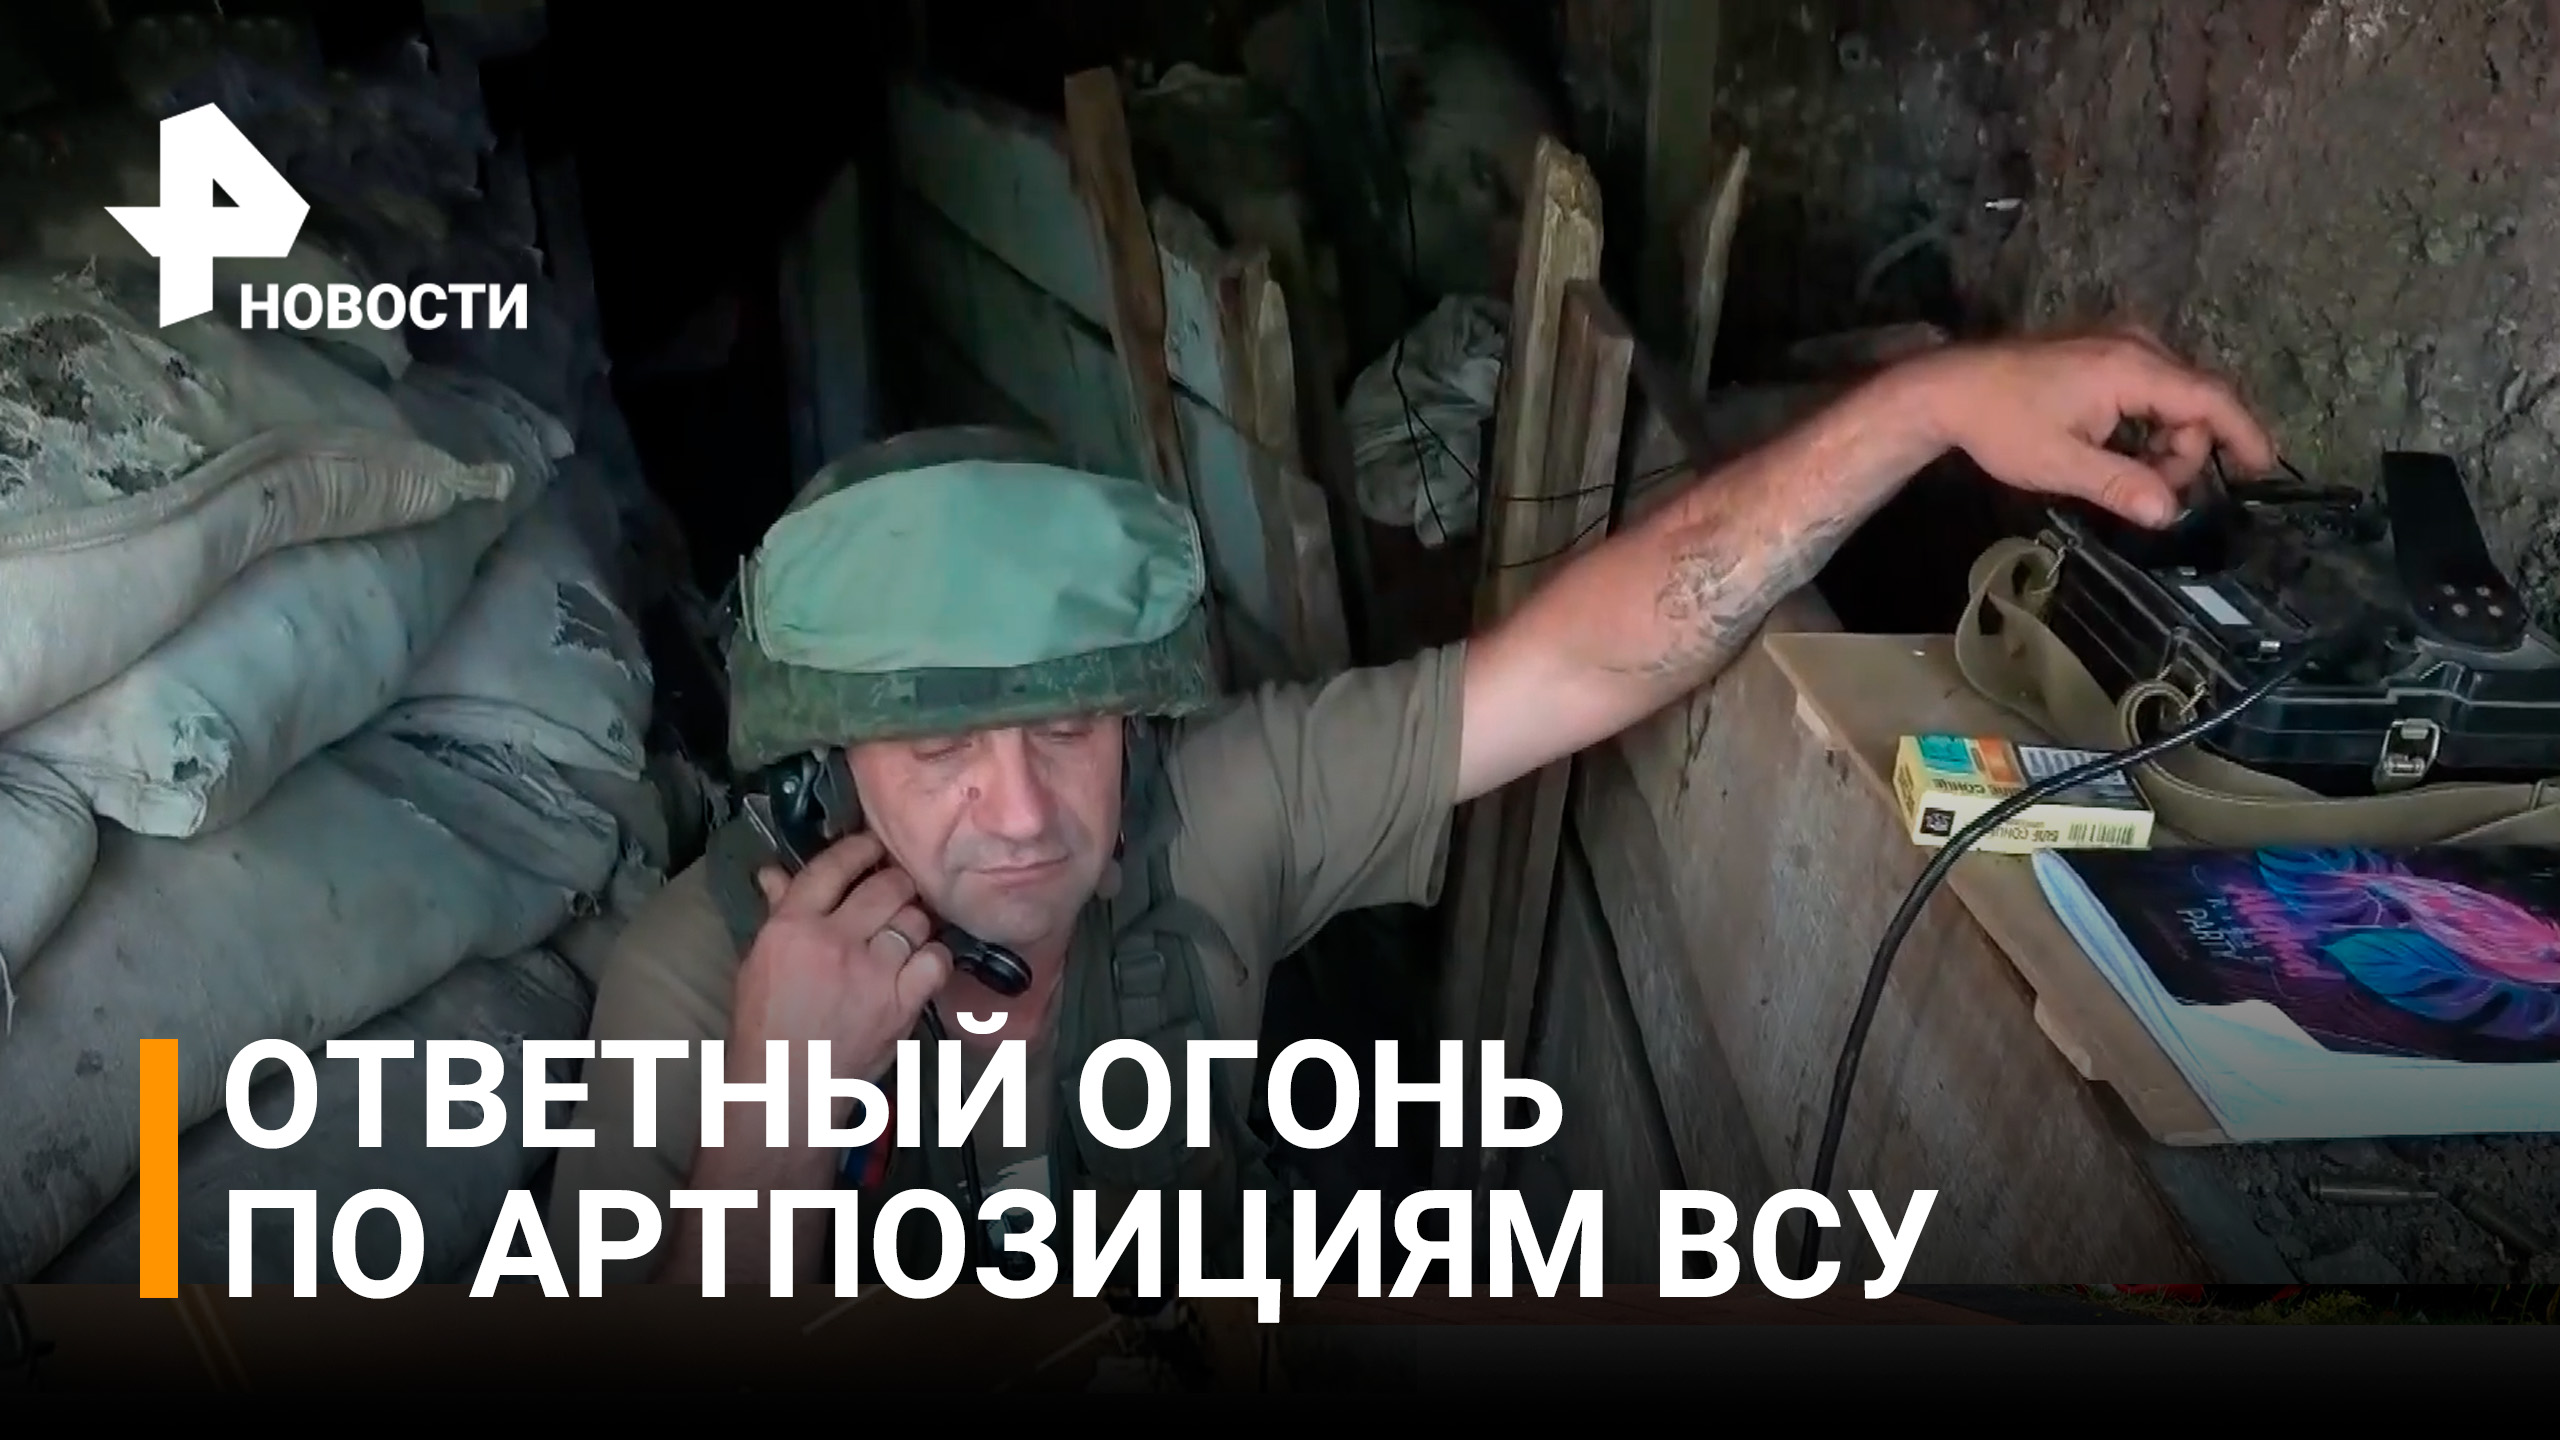 ВСУ оборудовали огневые позиции в городе Пески, чтобы обстреливать Донецк / РЕН Новости